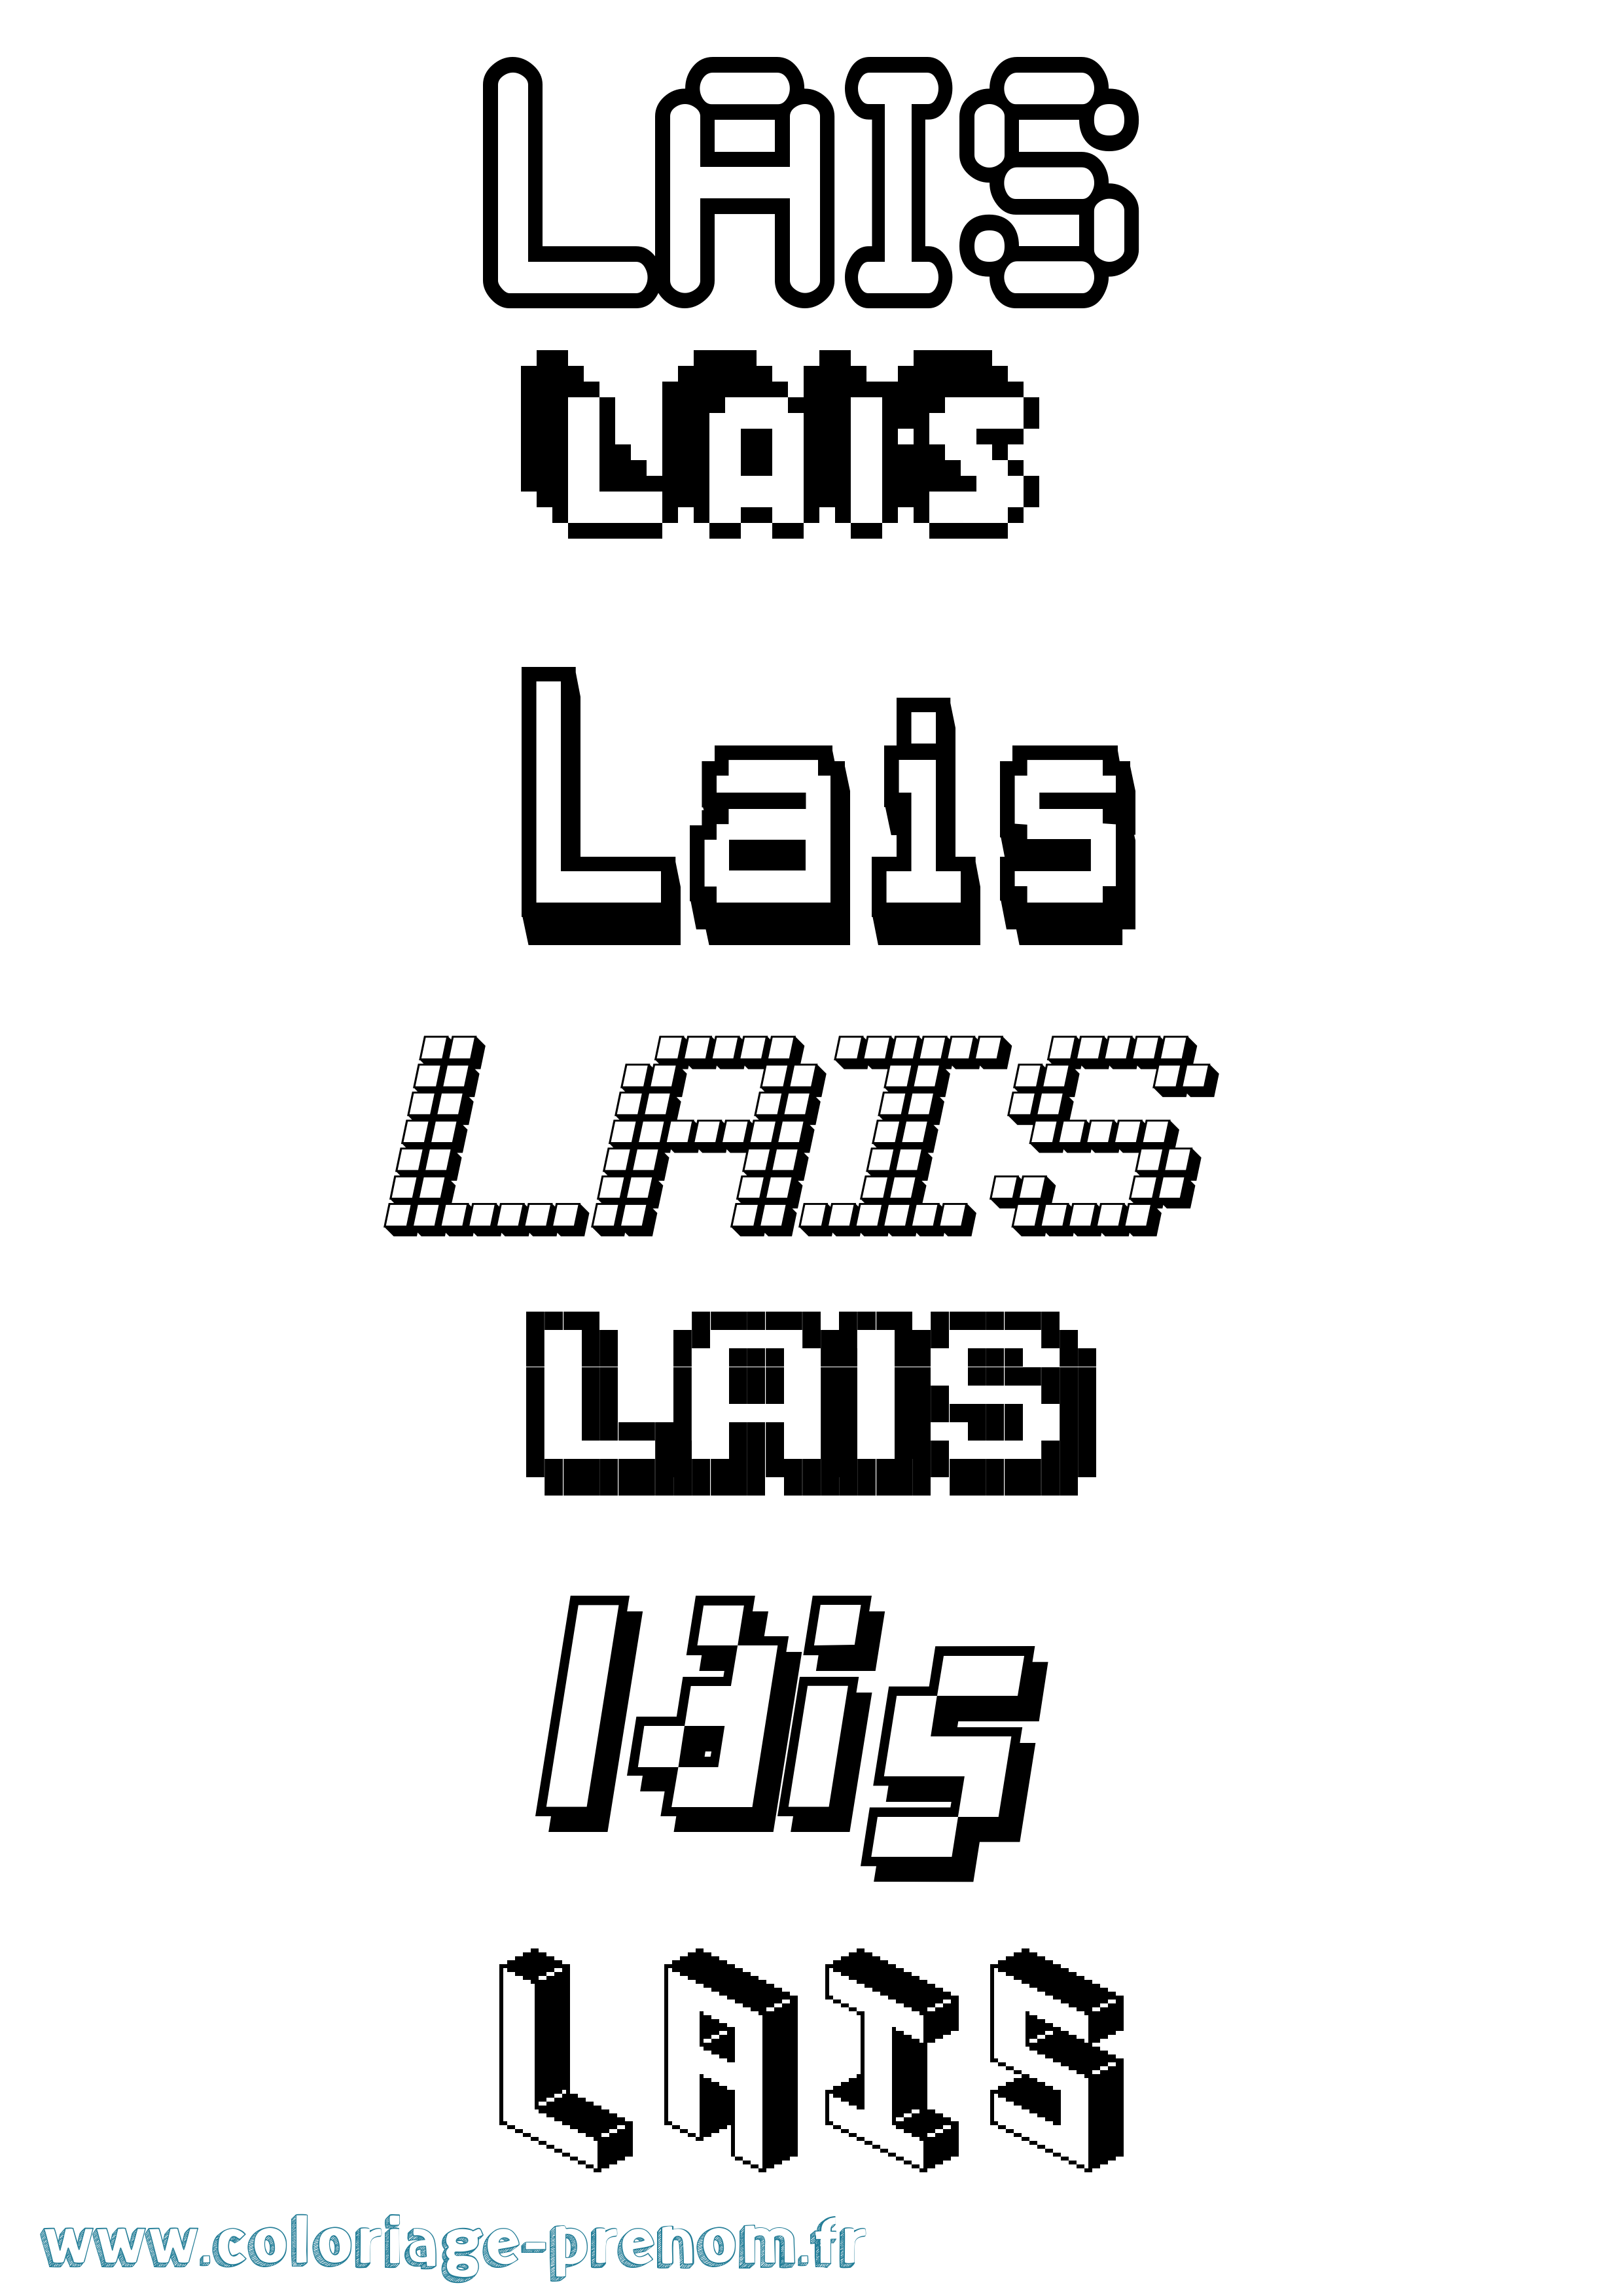 Coloriage prénom Lais Pixel